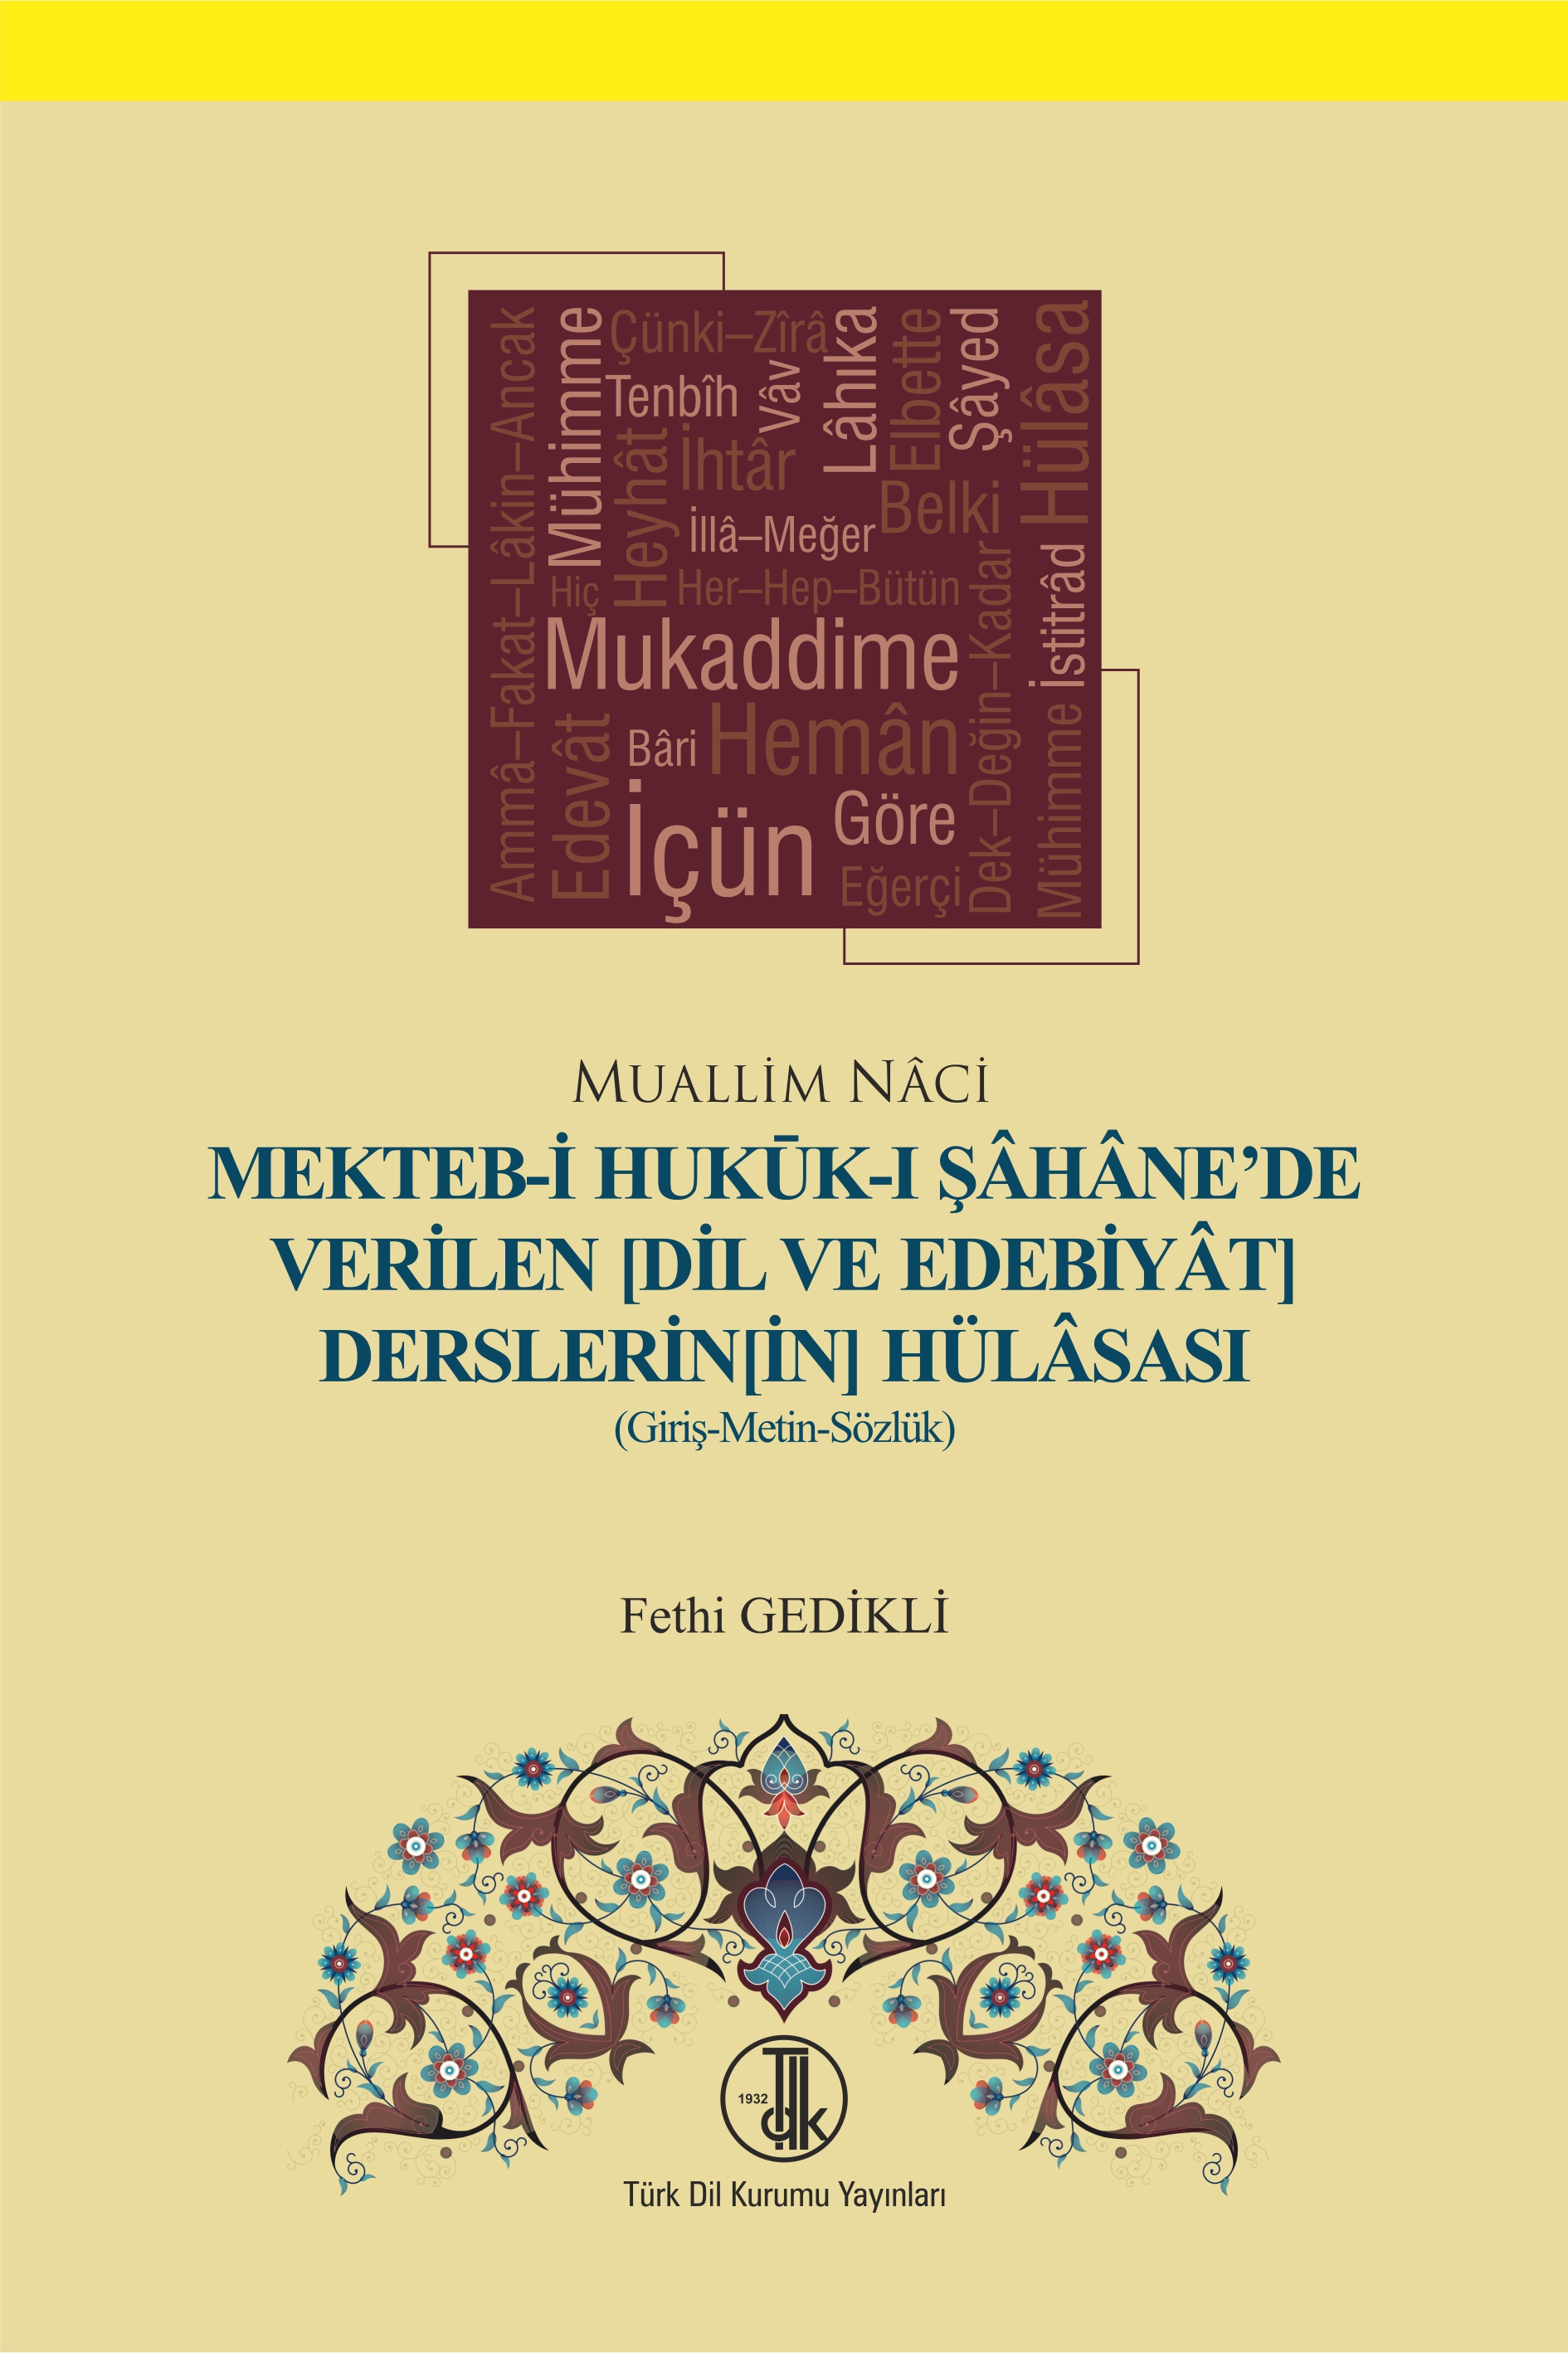 Mekteb-i Hukuk-ı Şahane'de Verilen (Dil ve Edebiyat Derslerinin) Hülasası, 2022